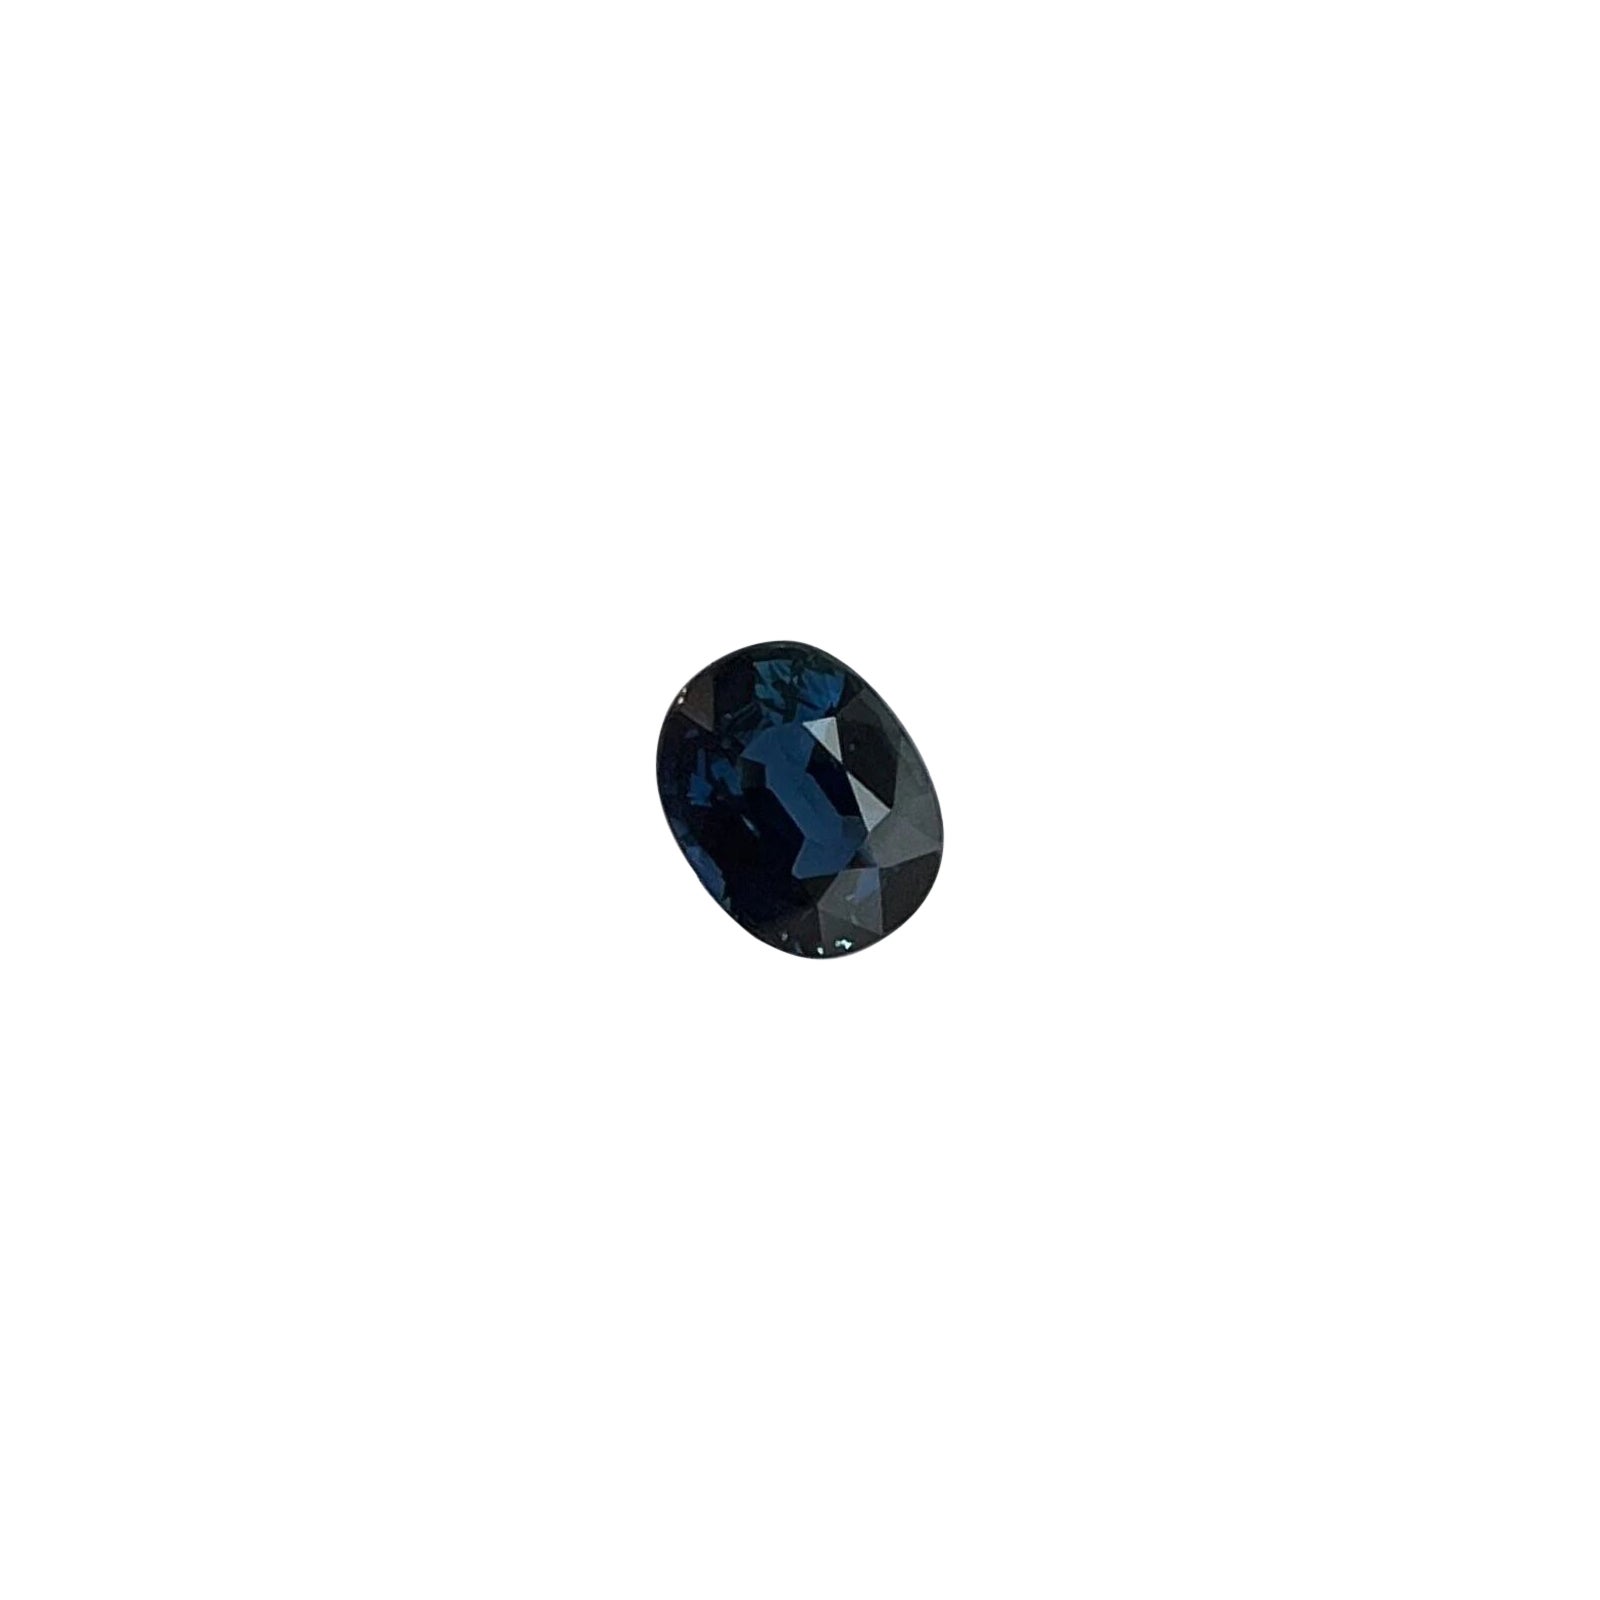 Saphir bleu non traité taille coussin de 0,63 carat certifié IGI, taille libre 5,4 x 4,3 mm